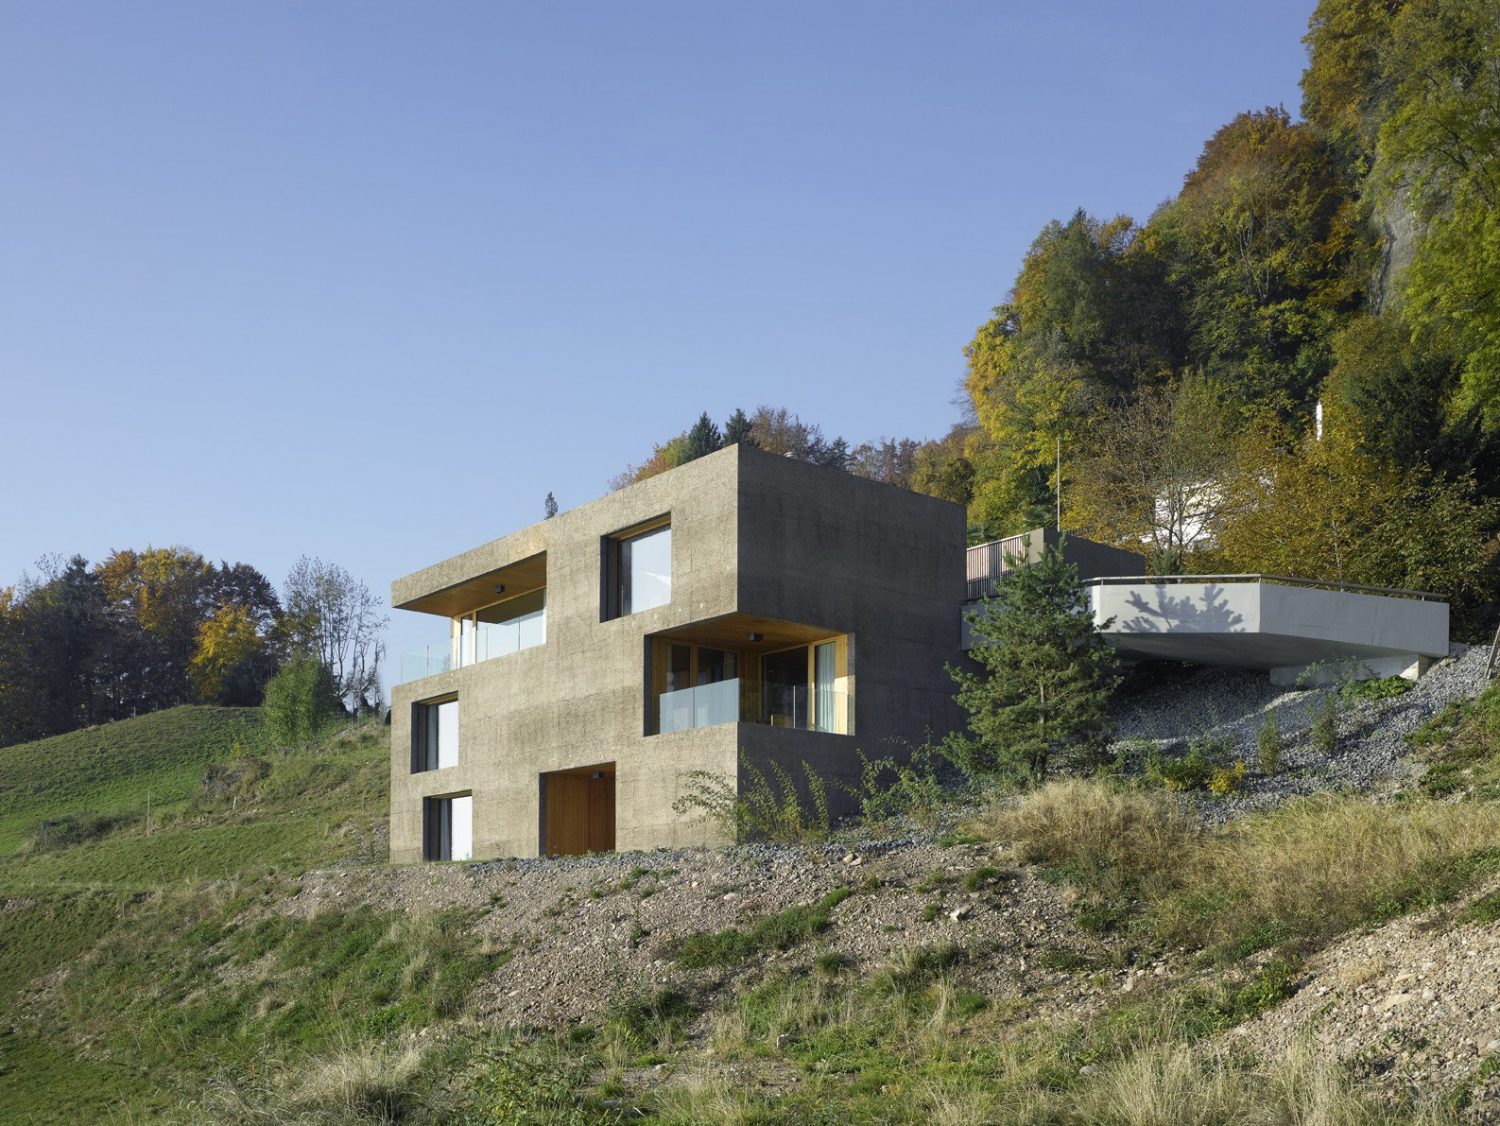 Holiday Home in Vitznau by alp Architektur Lischer Partner